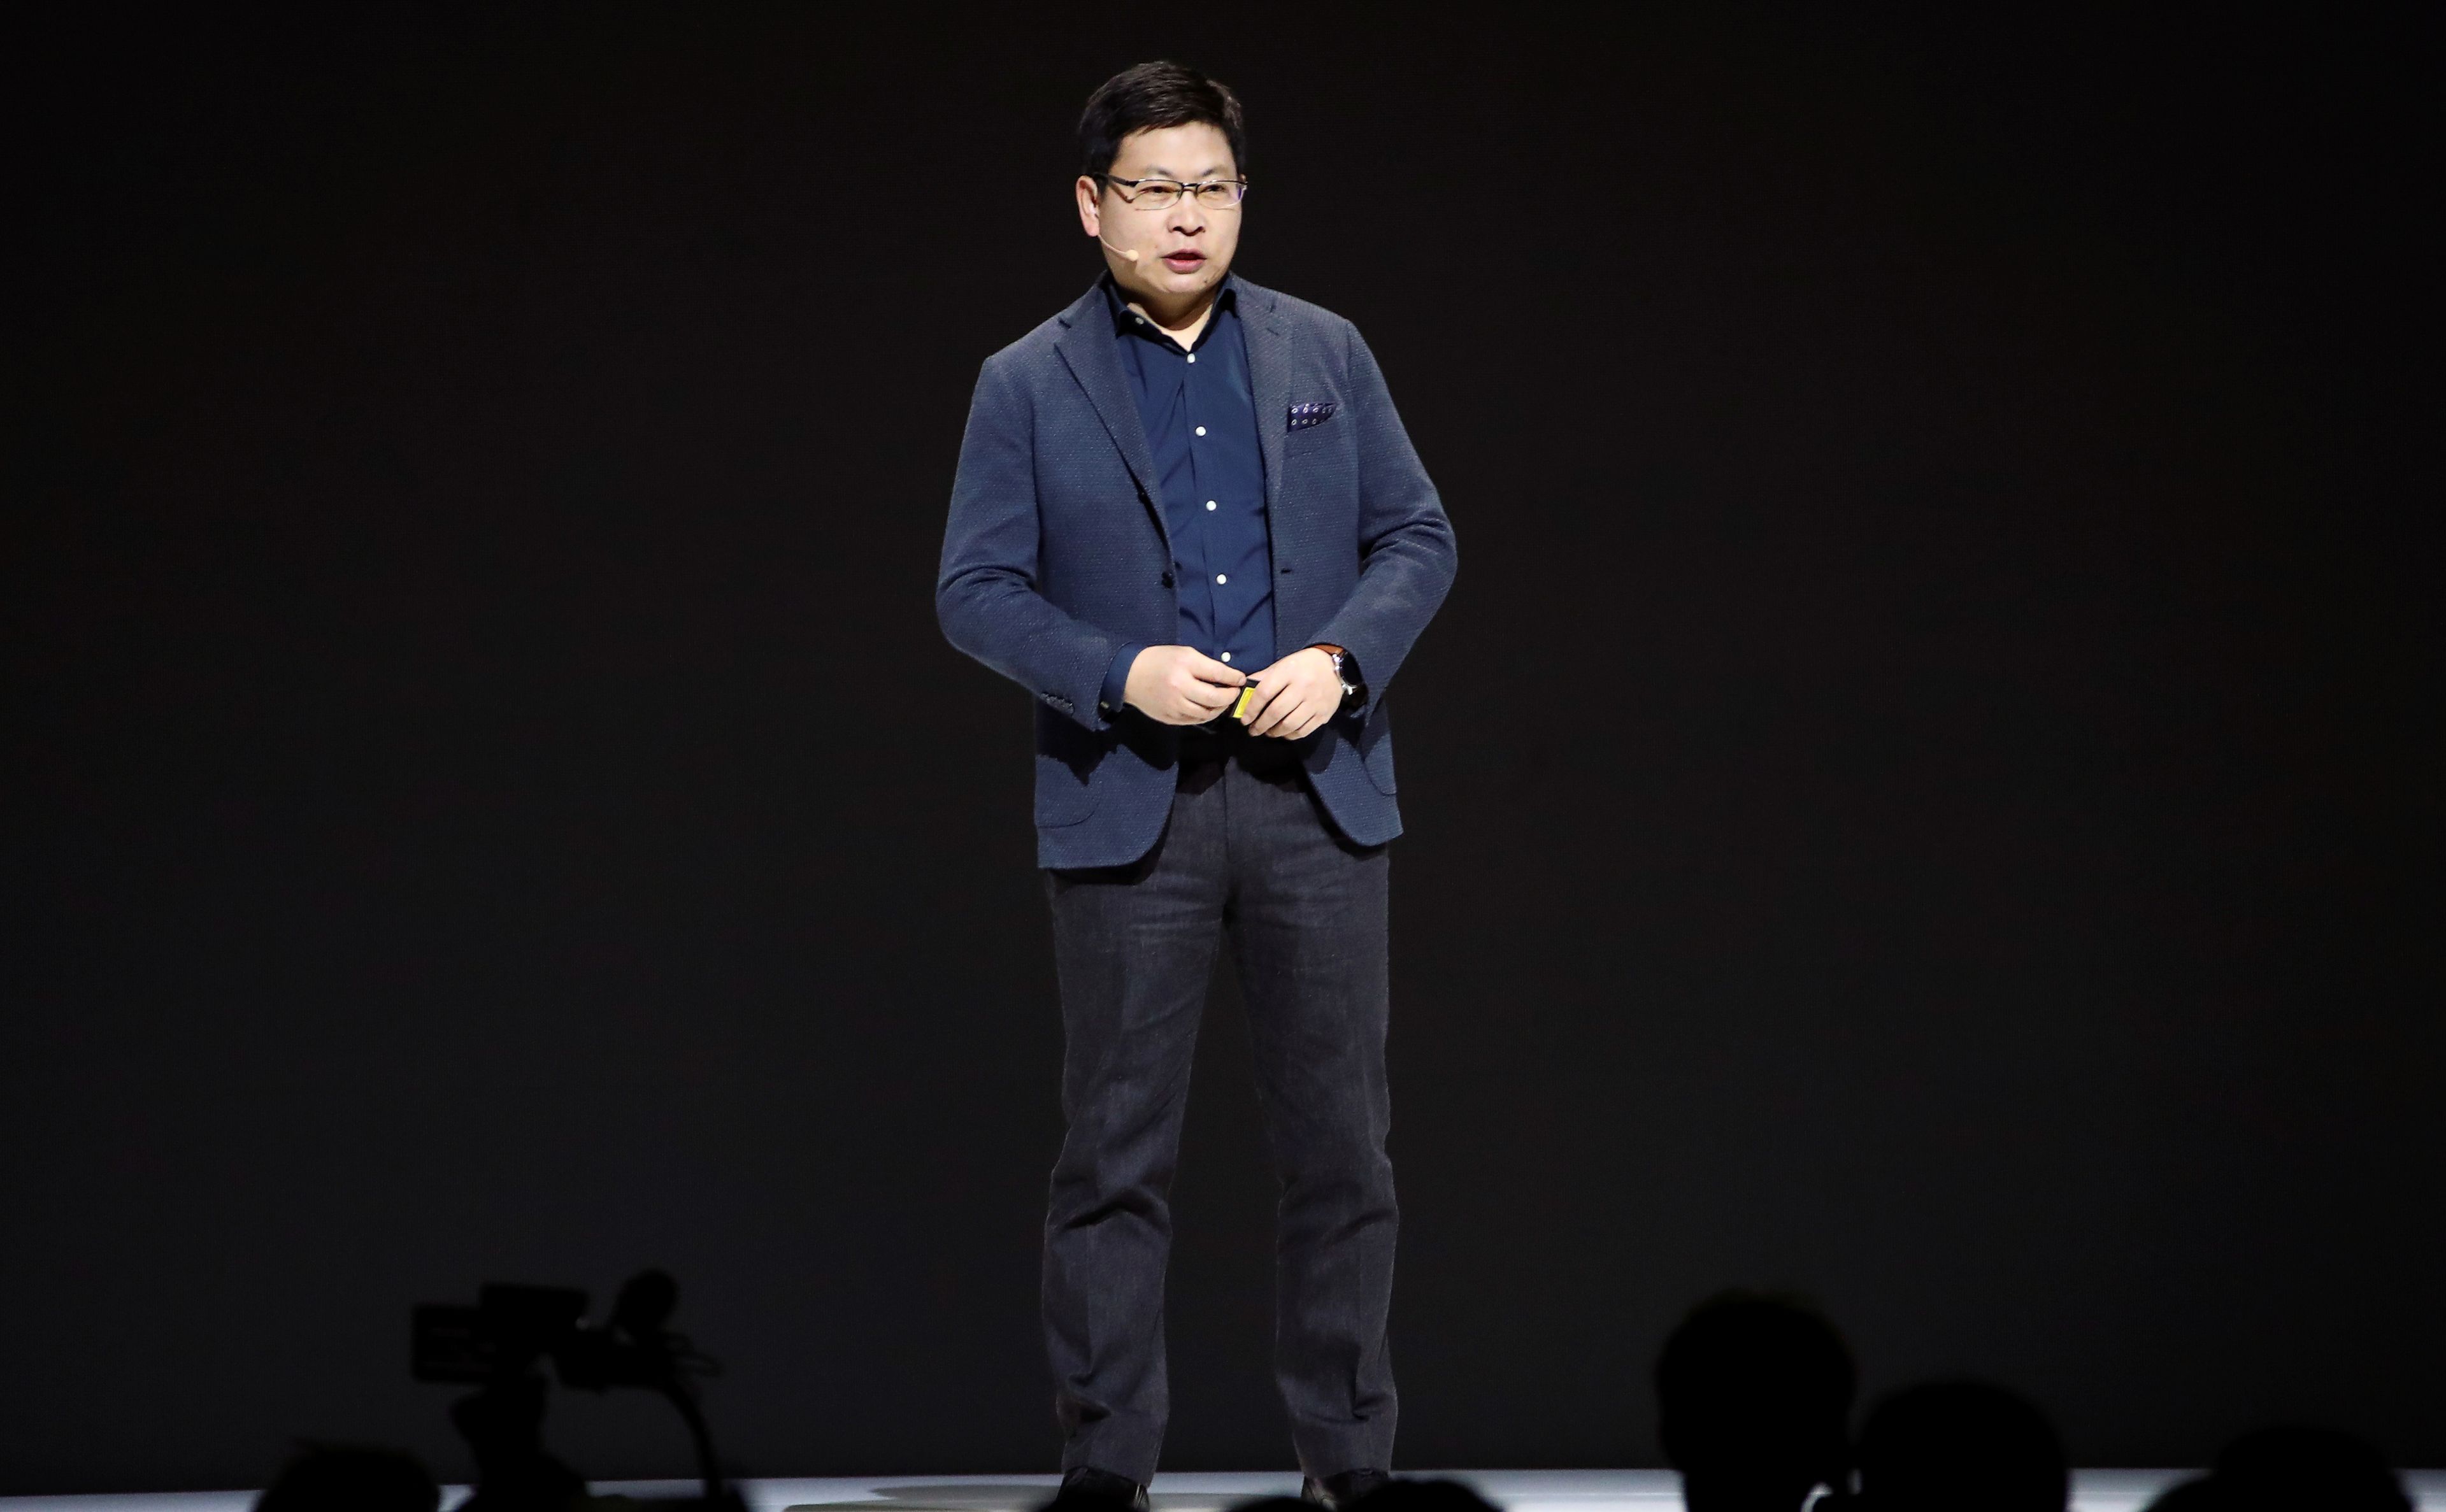 Richard Yu, CEO of Huawei